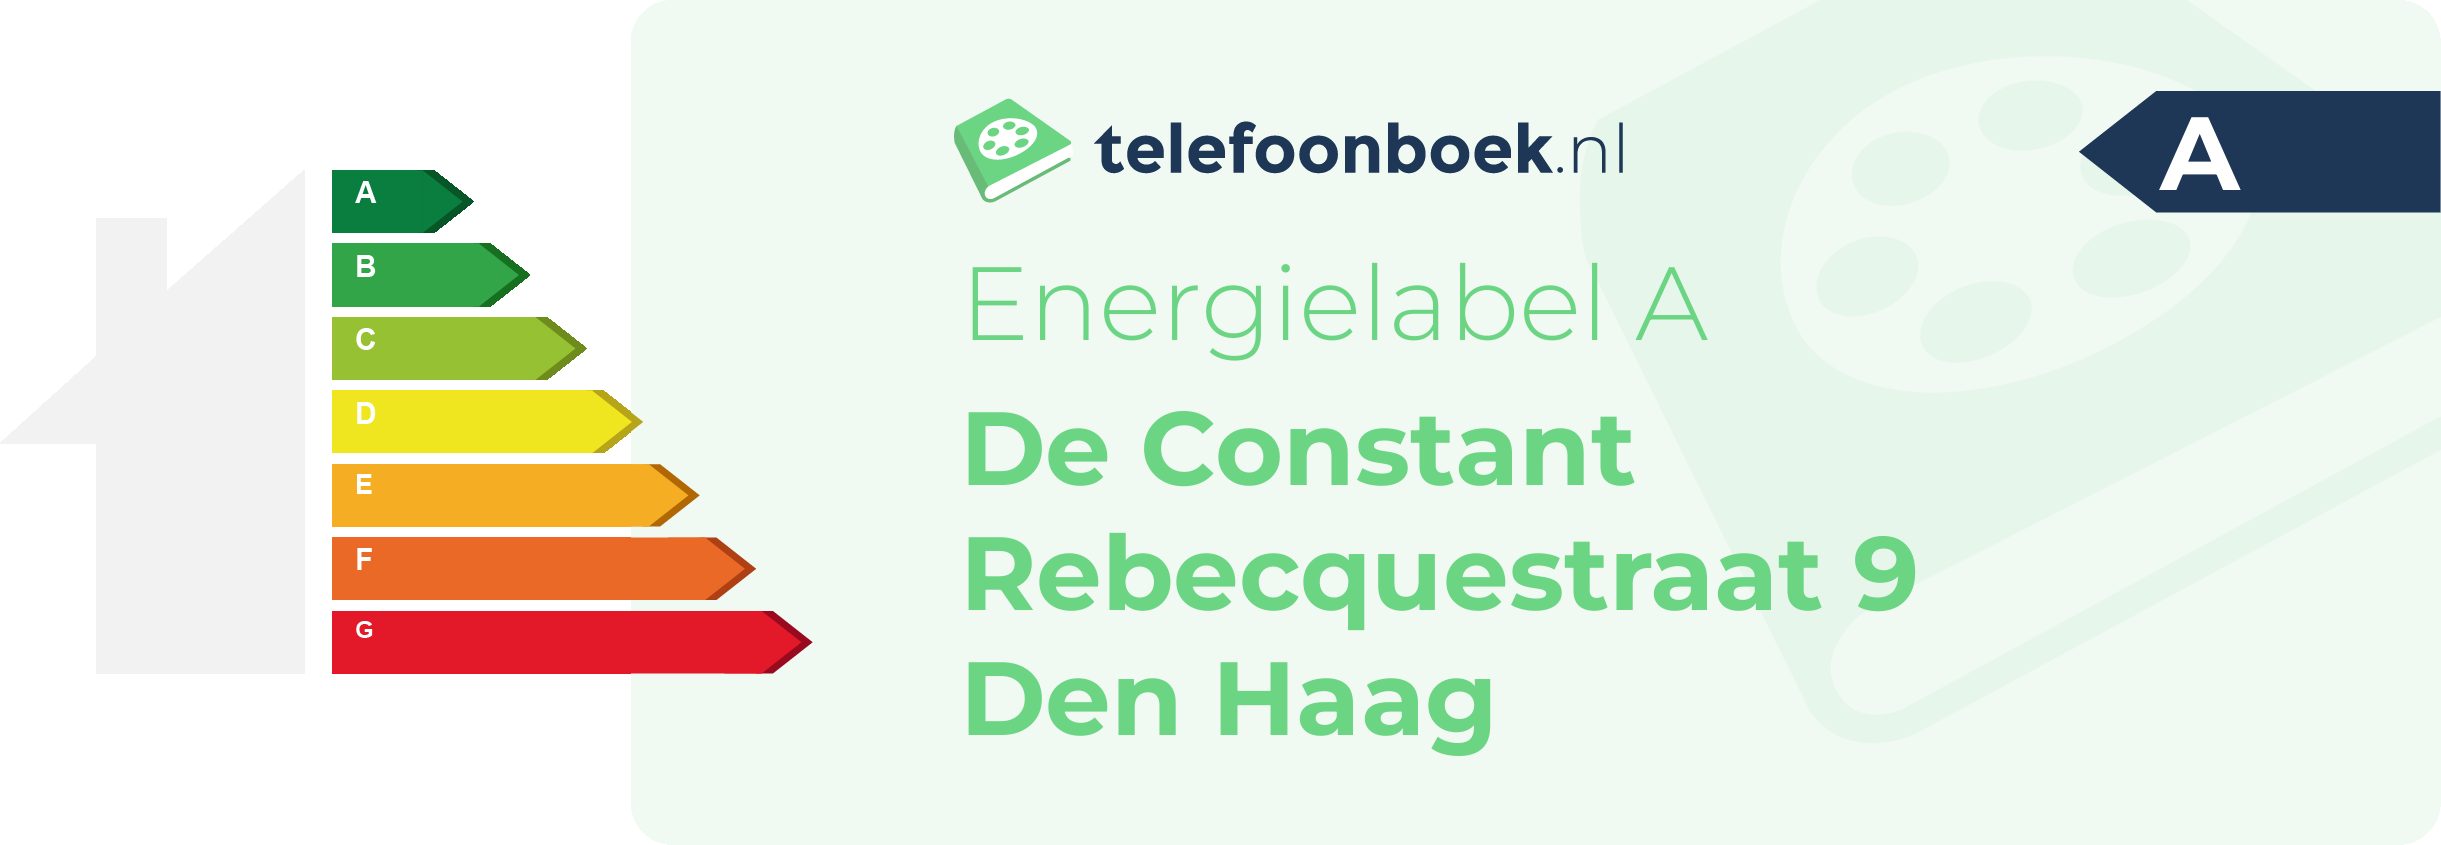 Energielabel De Constant Rebecquestraat 9 Den Haag